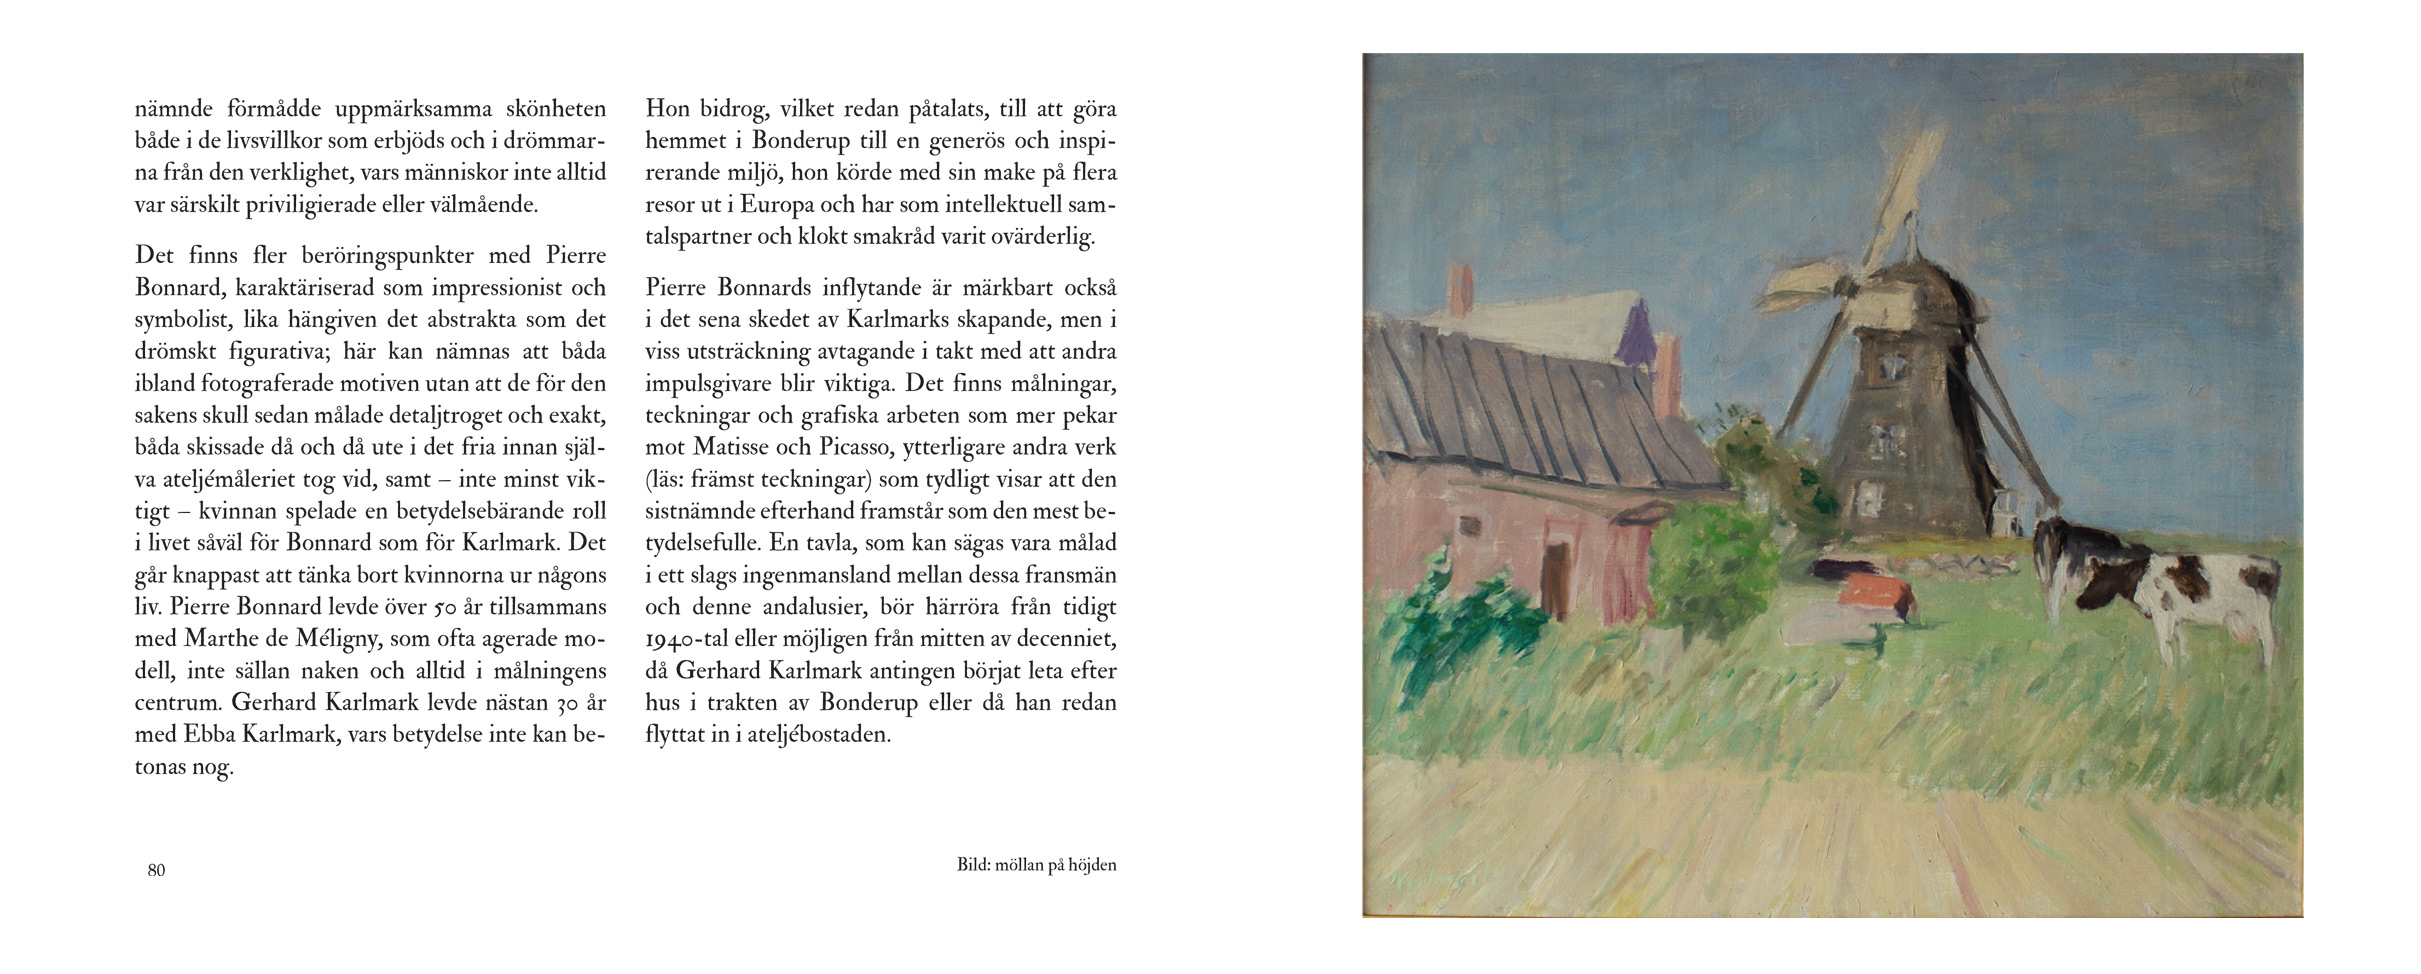 Uppslag ur boken 'Gerhard Karlmark – ett konstnärsliv' av Michael Economou (sid 80-81)